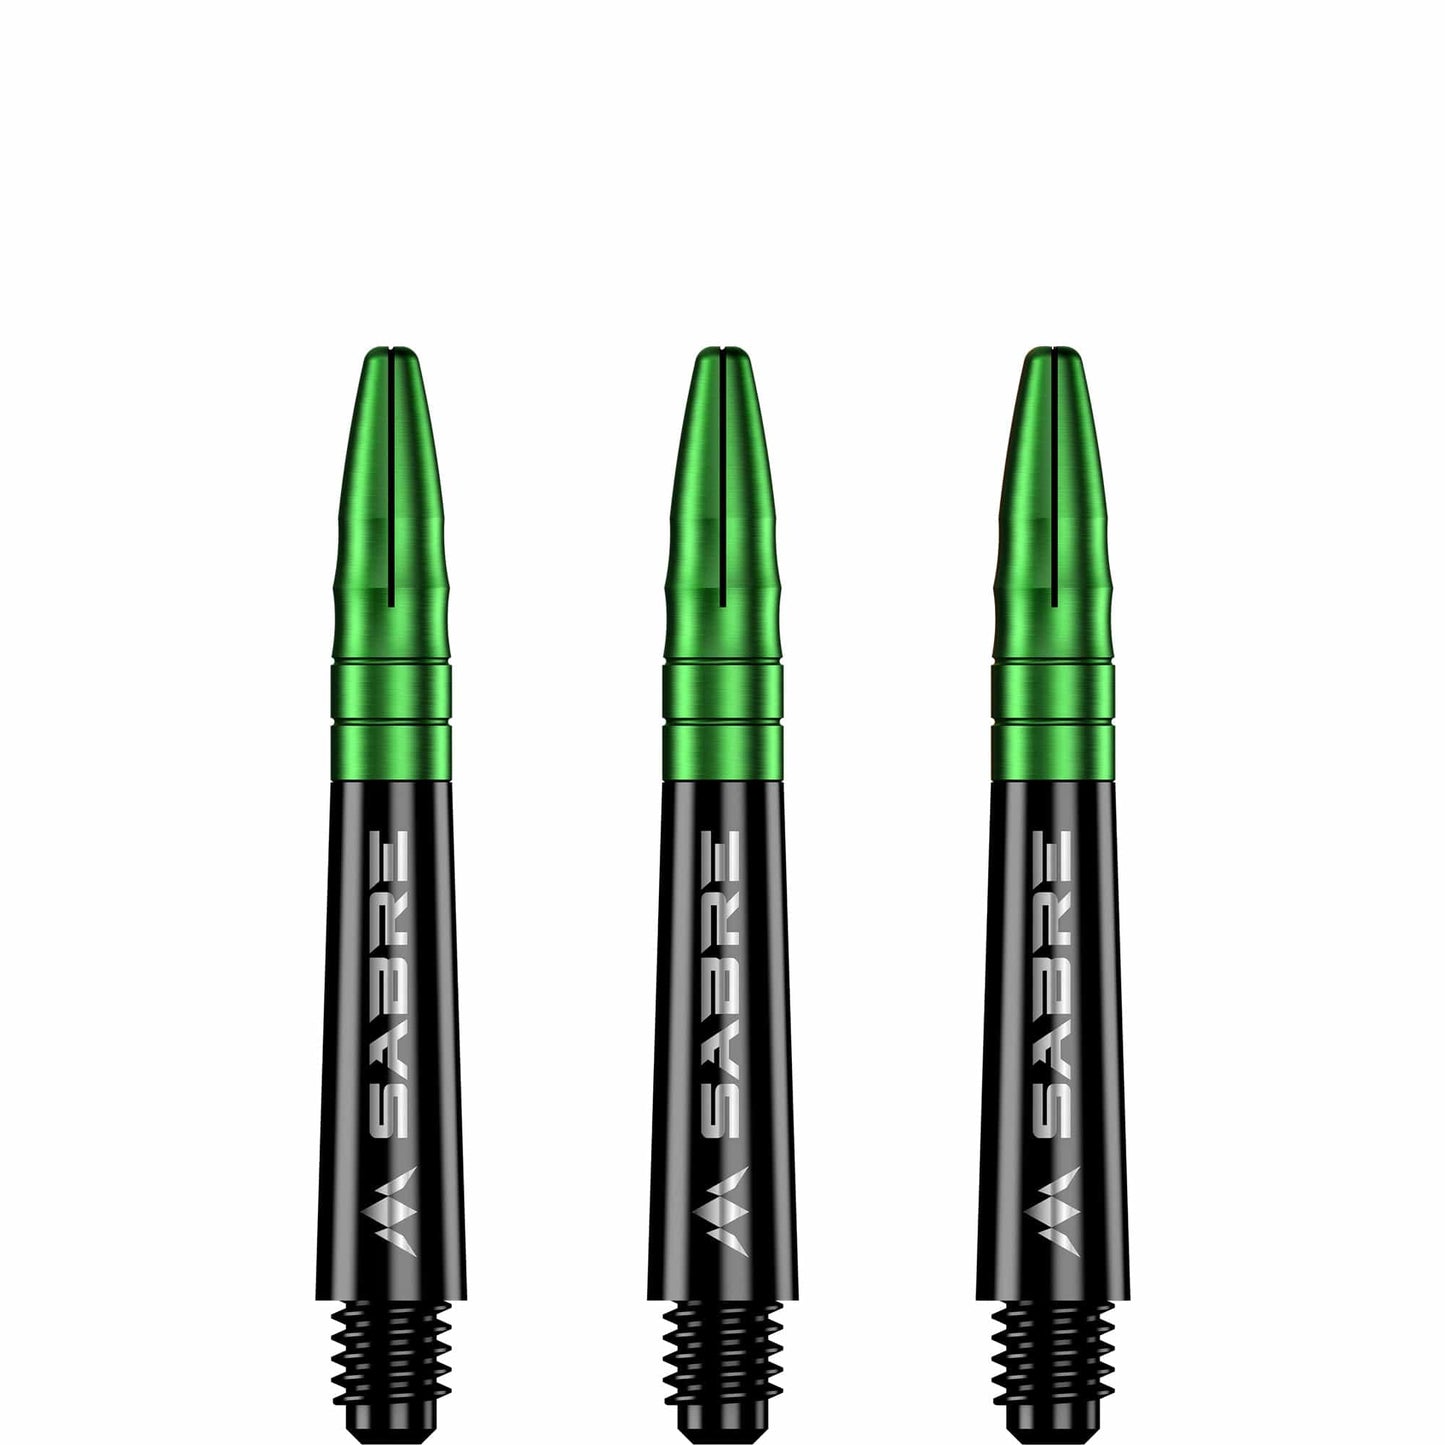 Mission Sabre Shafts - Polycarbonate Dart Stems - Black - Green Top Short